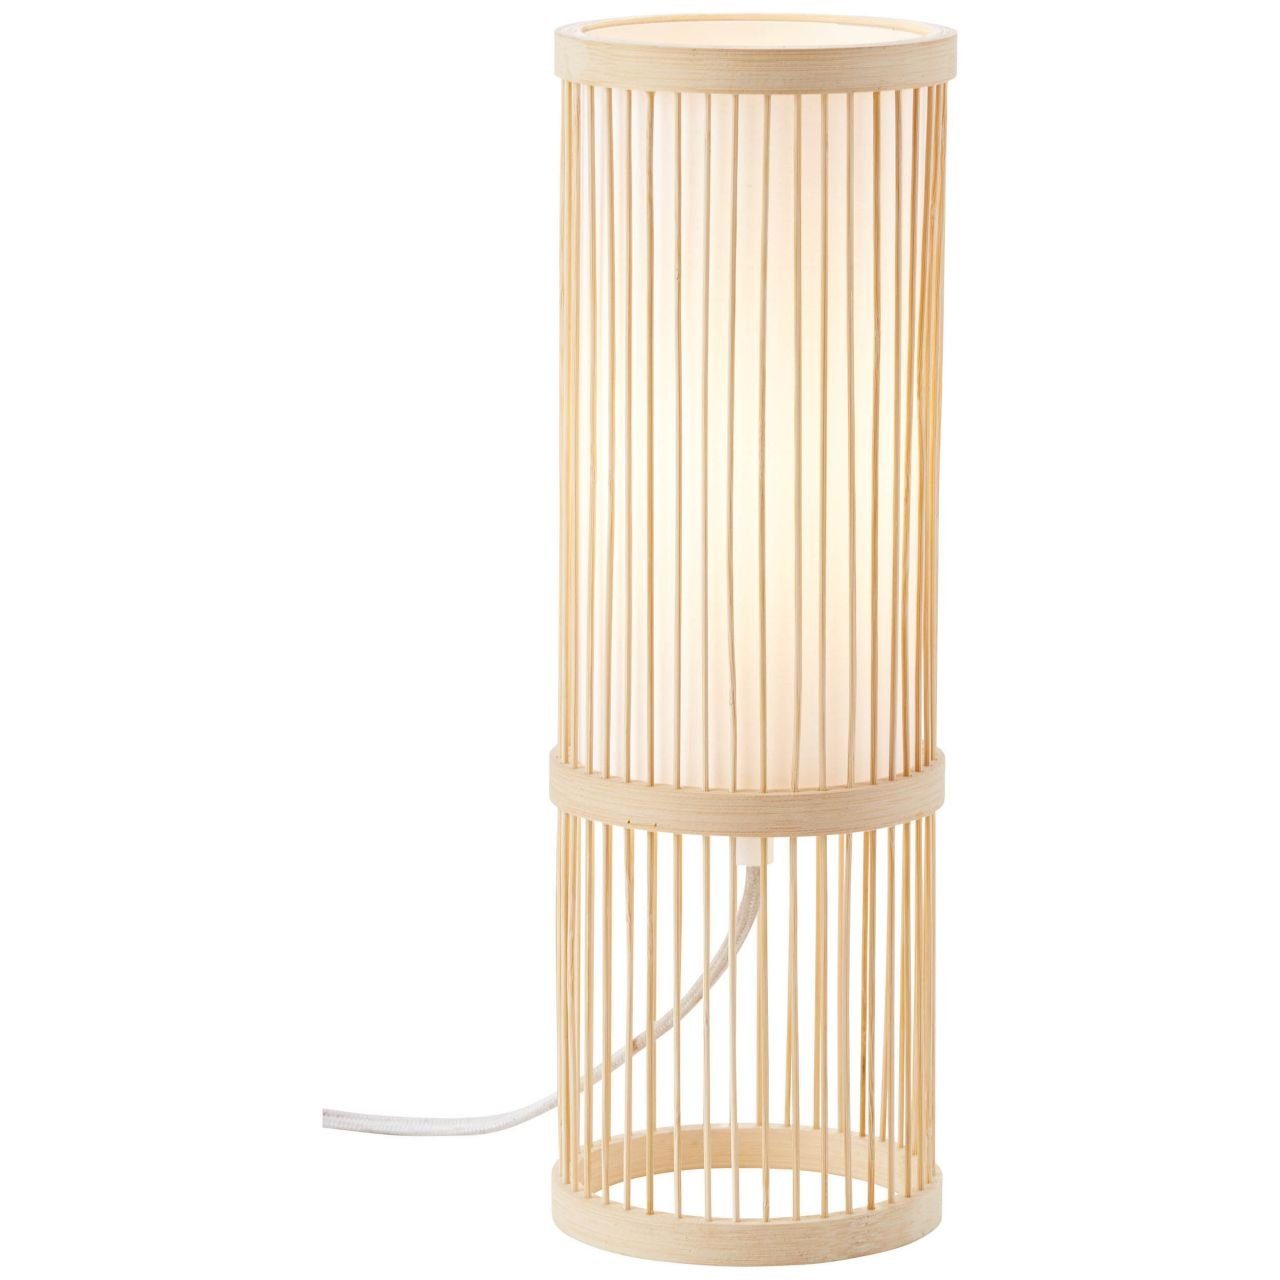 Brilliant Tischleuchte Nori, Lampe Nori Tischleuchte natur/weiß 1x A60, E27, 40W, g.f. Normallamp | Tischlampen